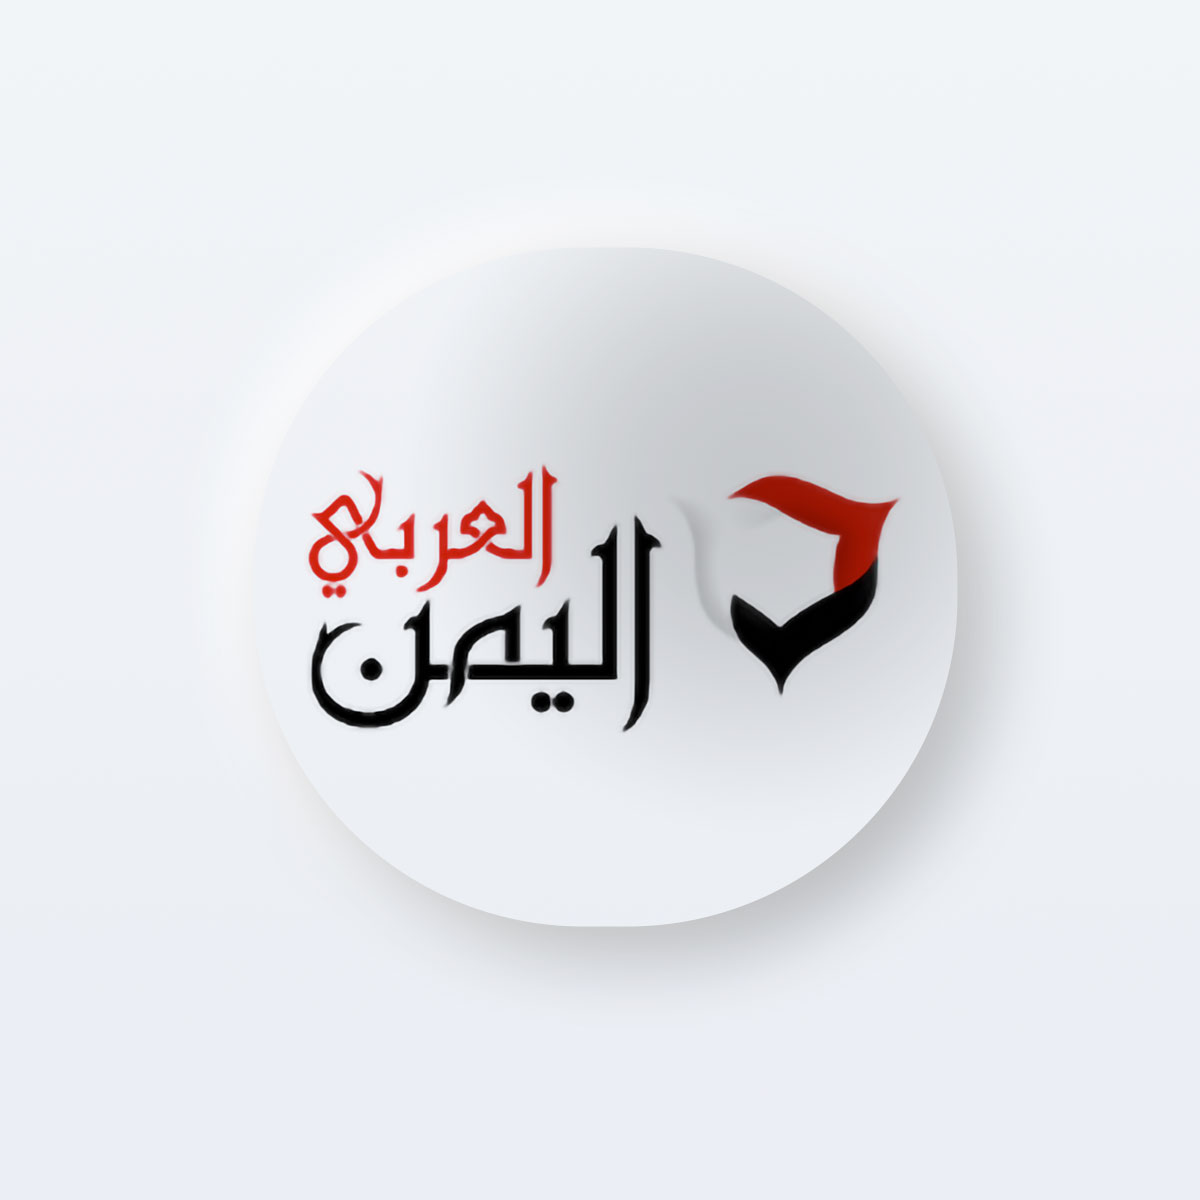 العداء اليمني اليعري يحقق برونزية في البطولة العربية لالعاب القوى بمراكش